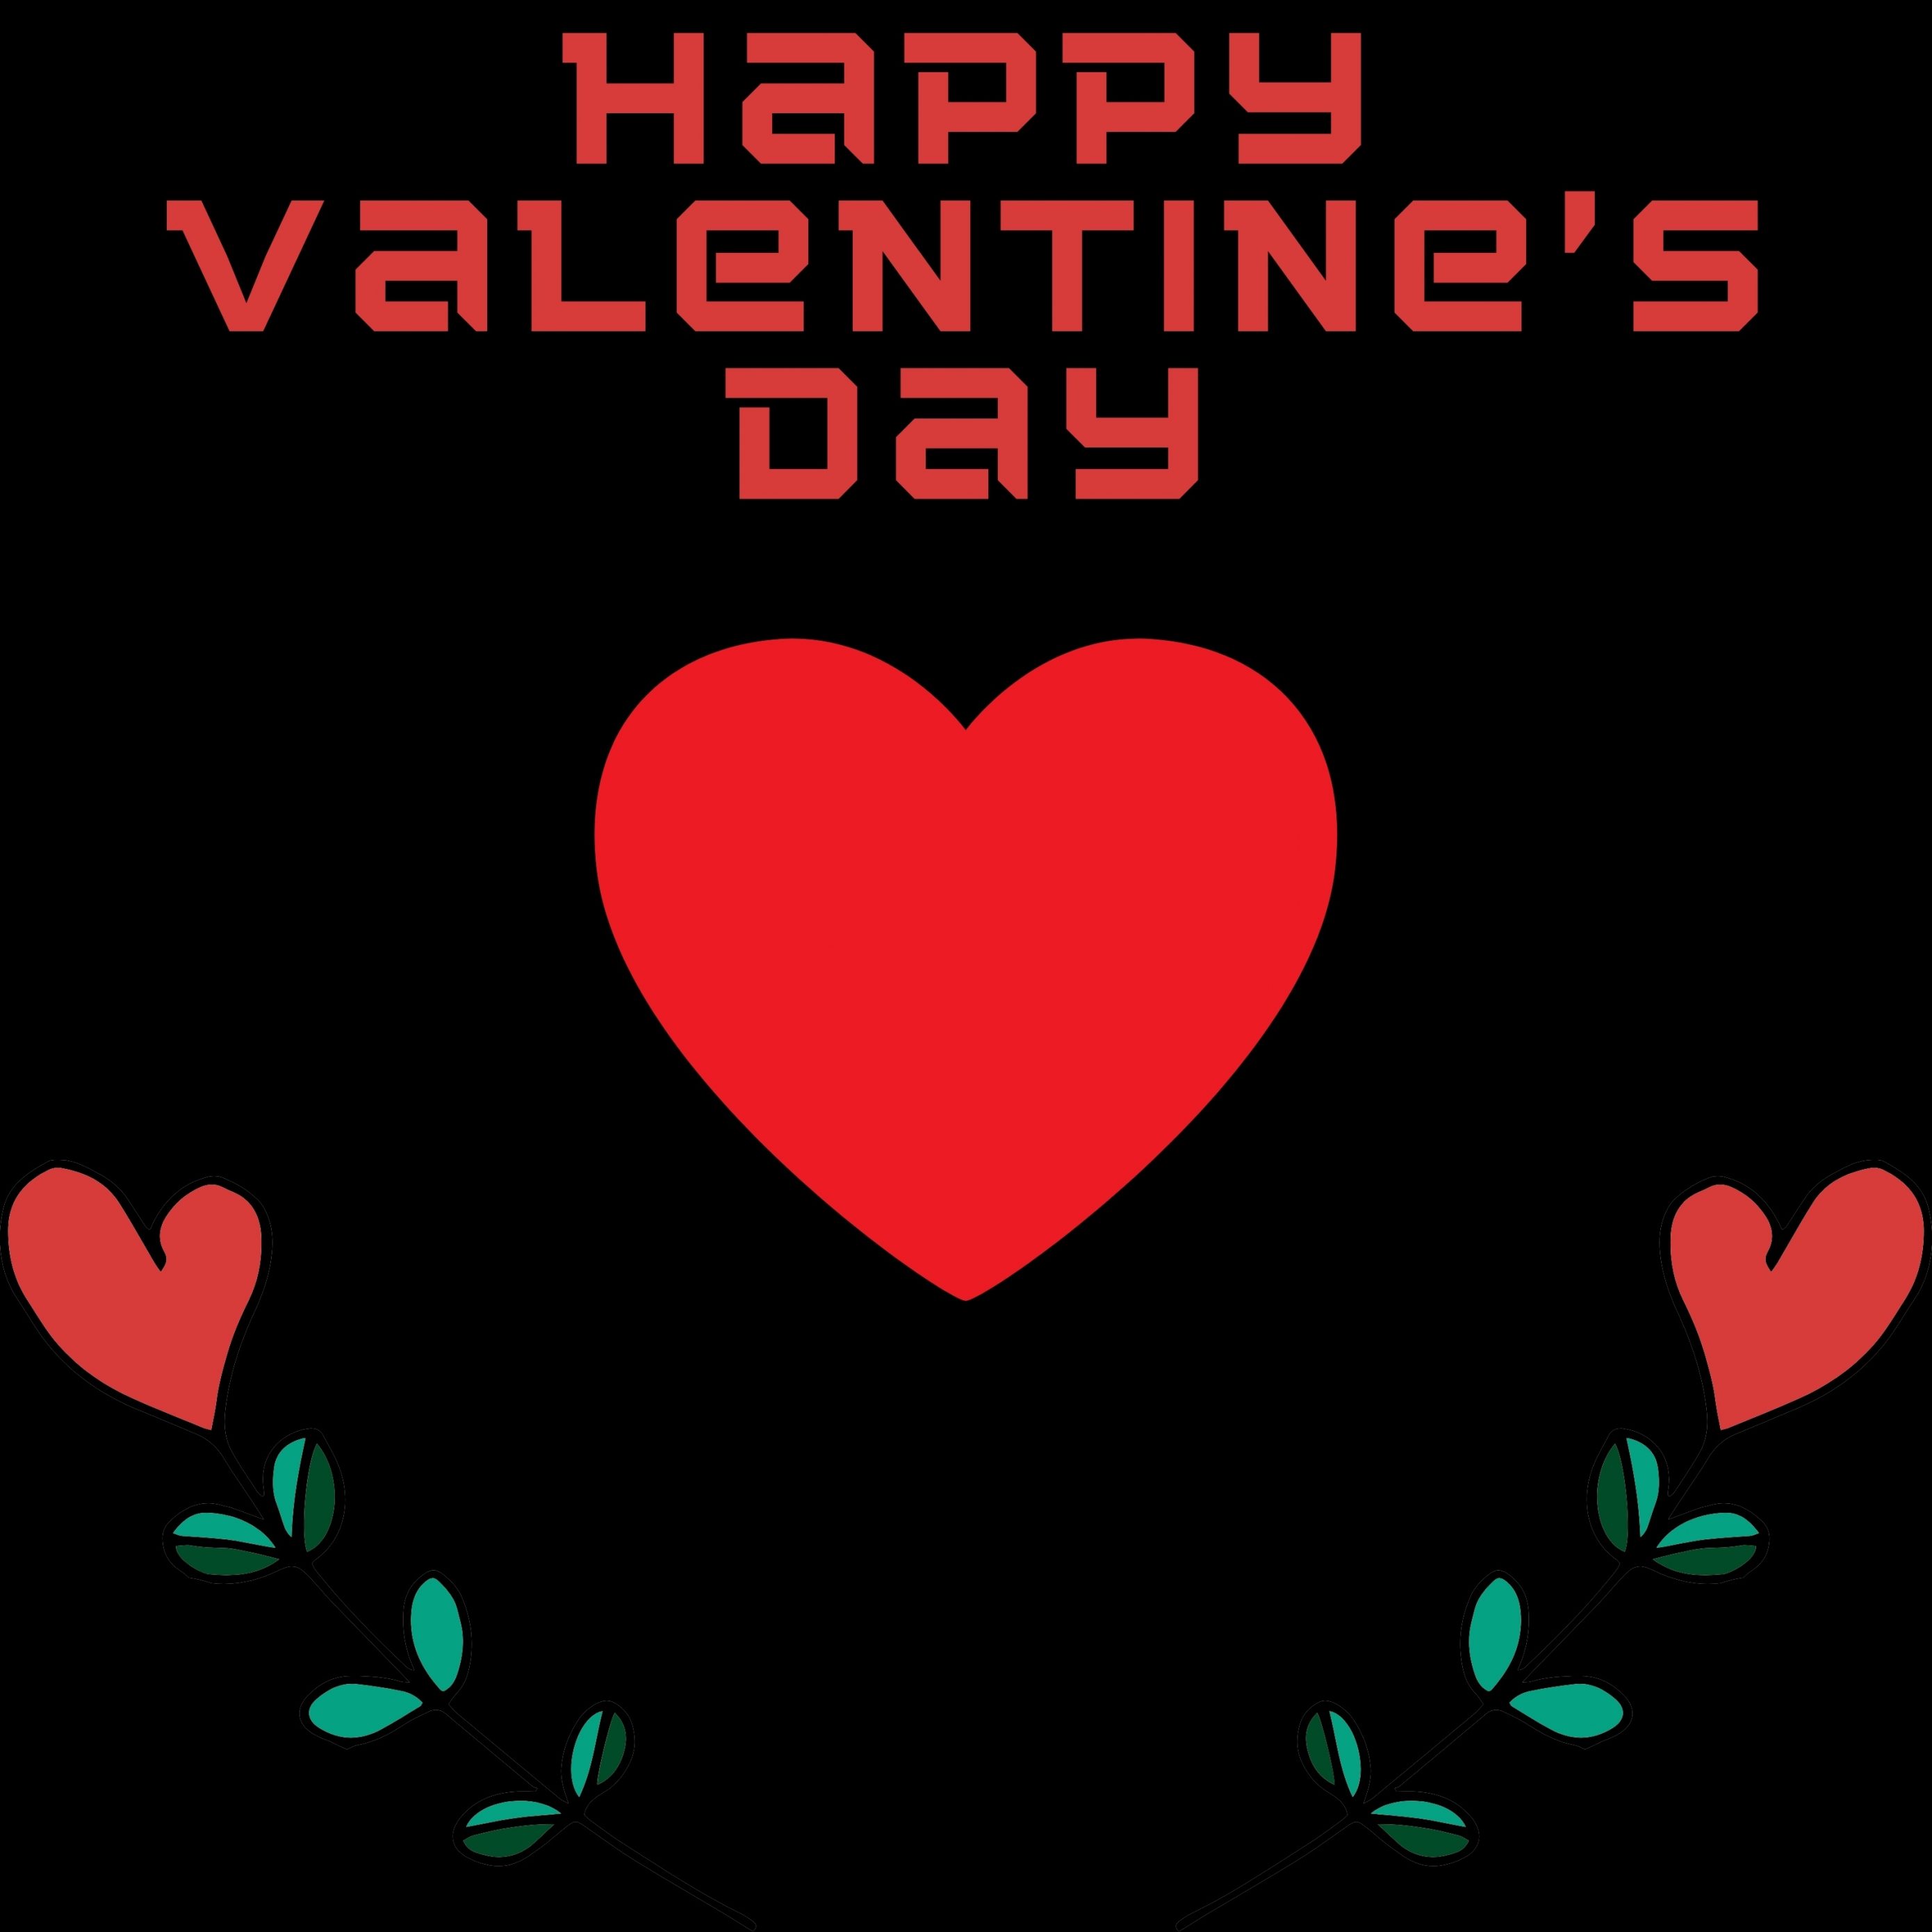 2780x2780 Parallax wallpaper 4k Happy Valentines Day February 14 iPad Wallpaper 2780x2780 pixels resolution